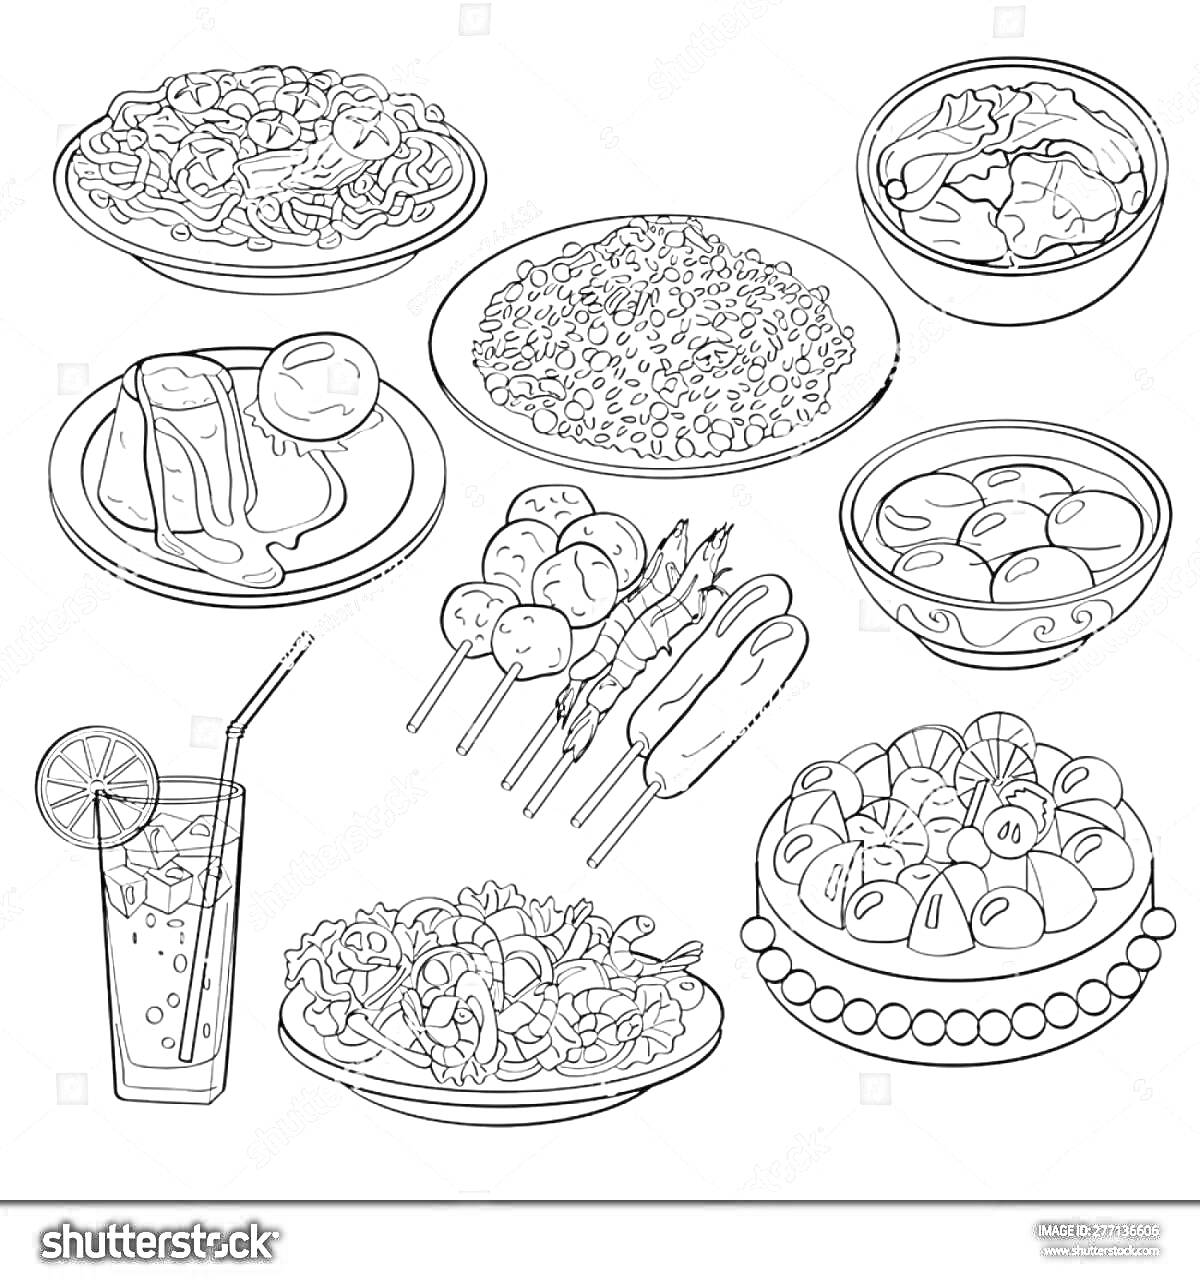 Раскраска Блюда разных стран с напитком - тарелка с пастой, тарелка с пловом, тарелка с супом, тарелка с запеченной рыбой и яйцом, шашлыки на шпажках, тарелка вареников, стакан с напитком и льдом, тарелка с салатом, тарелка с пирогом и ягодами